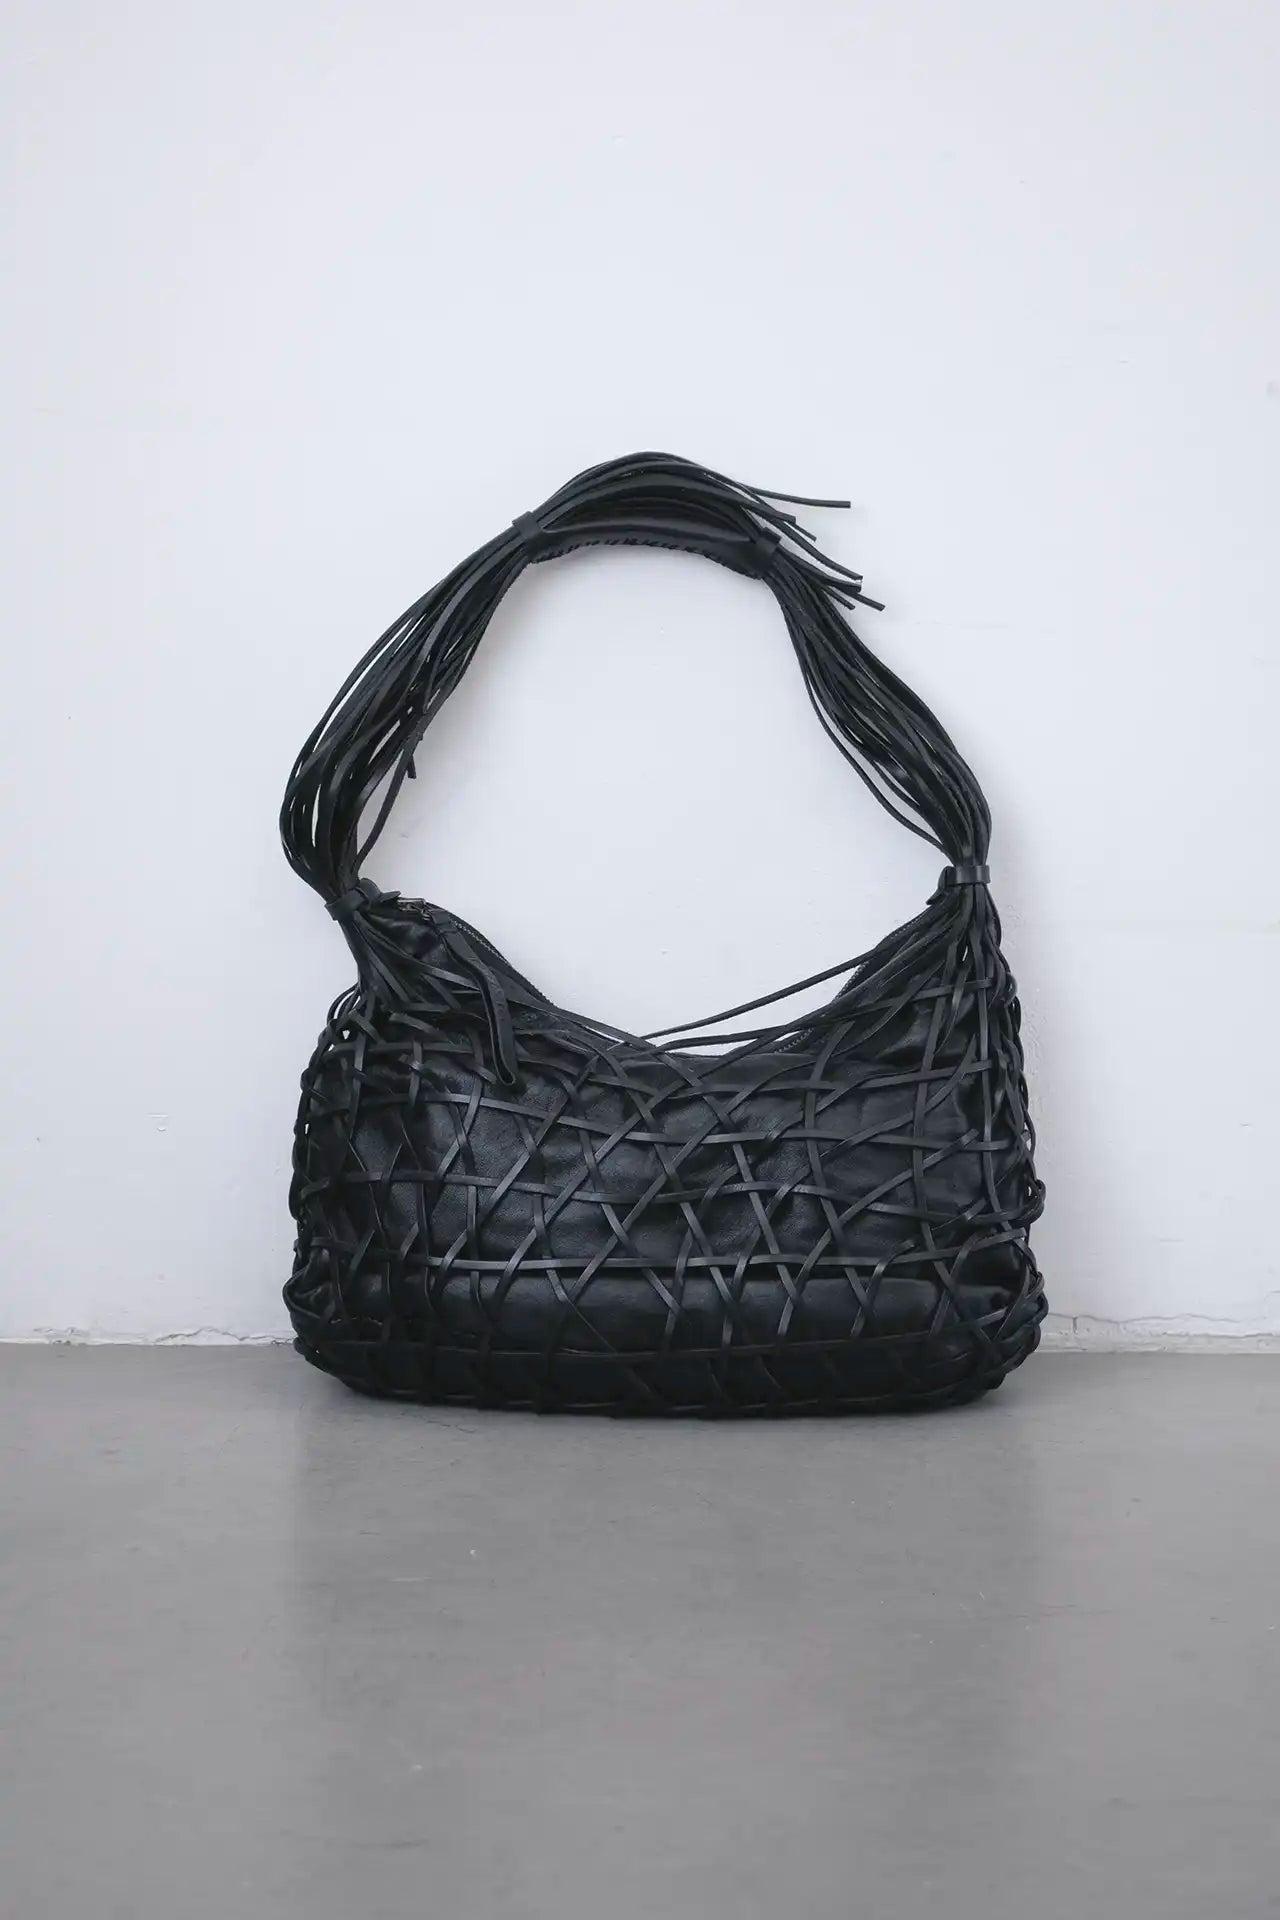 Lanvin Leather Bag- black